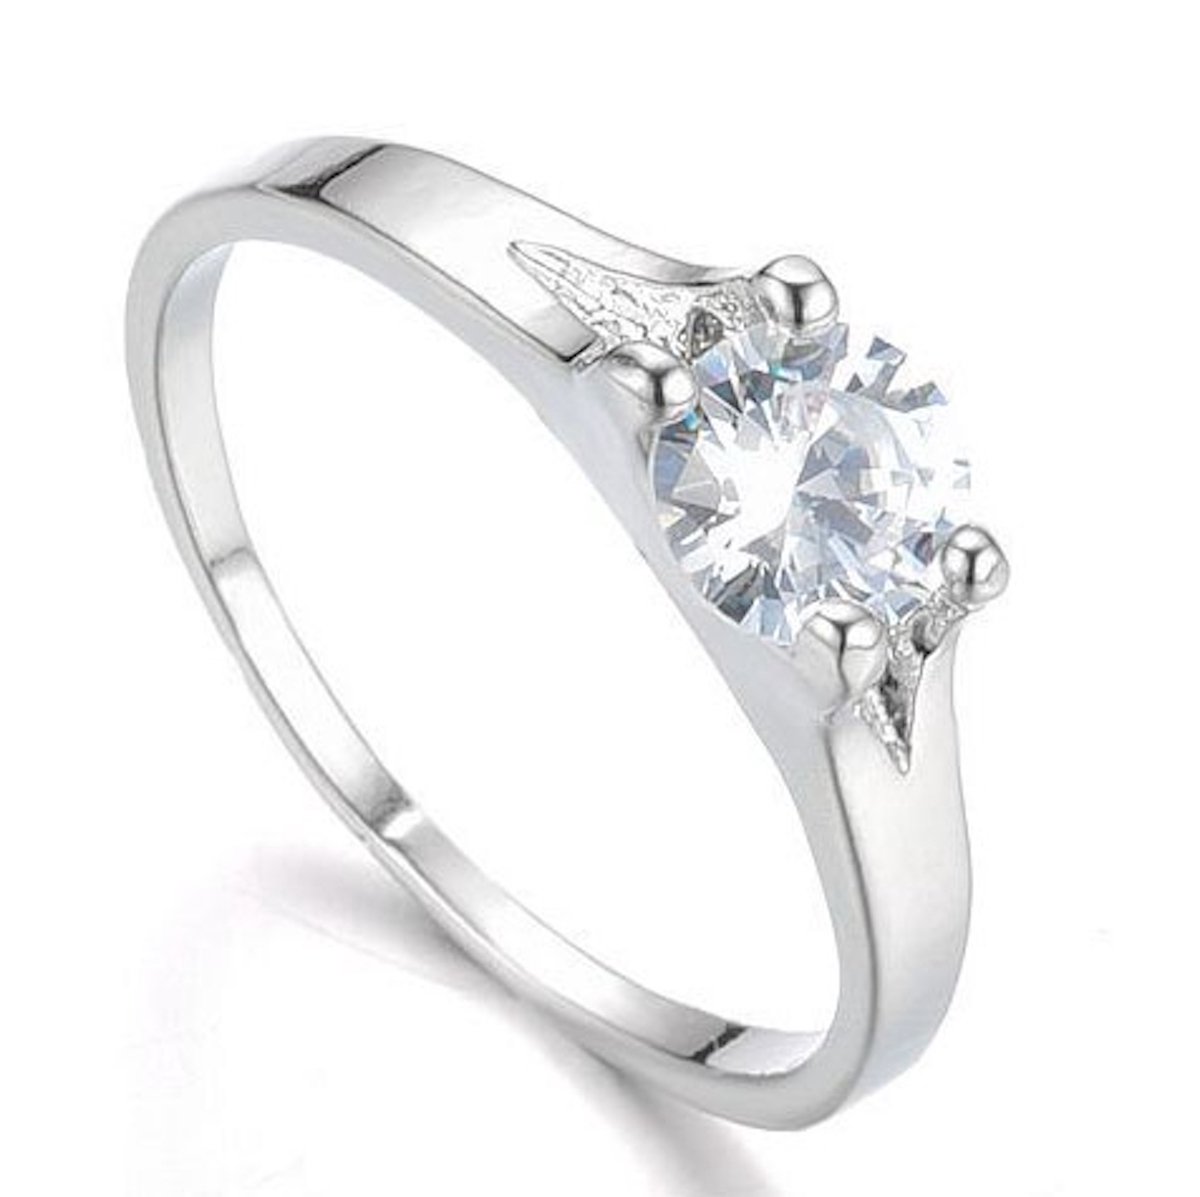 Luxe ring met zirkonia steen - Zilverkleurig - Maat 17 - 17,2 Milimeter - Damesdingetjes